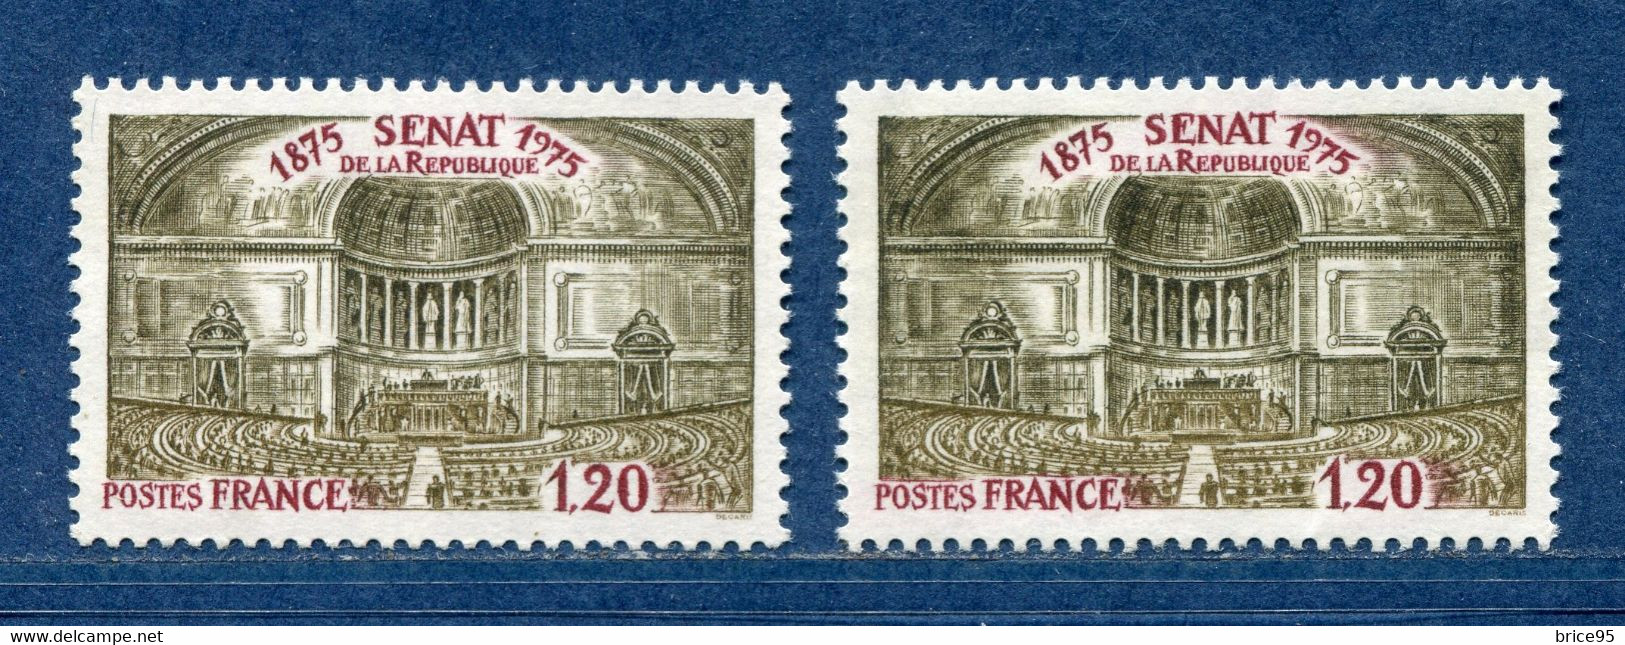 ⭐ France - Variété - YT N° 1843 - Couleurs - Pétouille - Neuf Sans Charnière - 1975 ⭐ - Nuevos